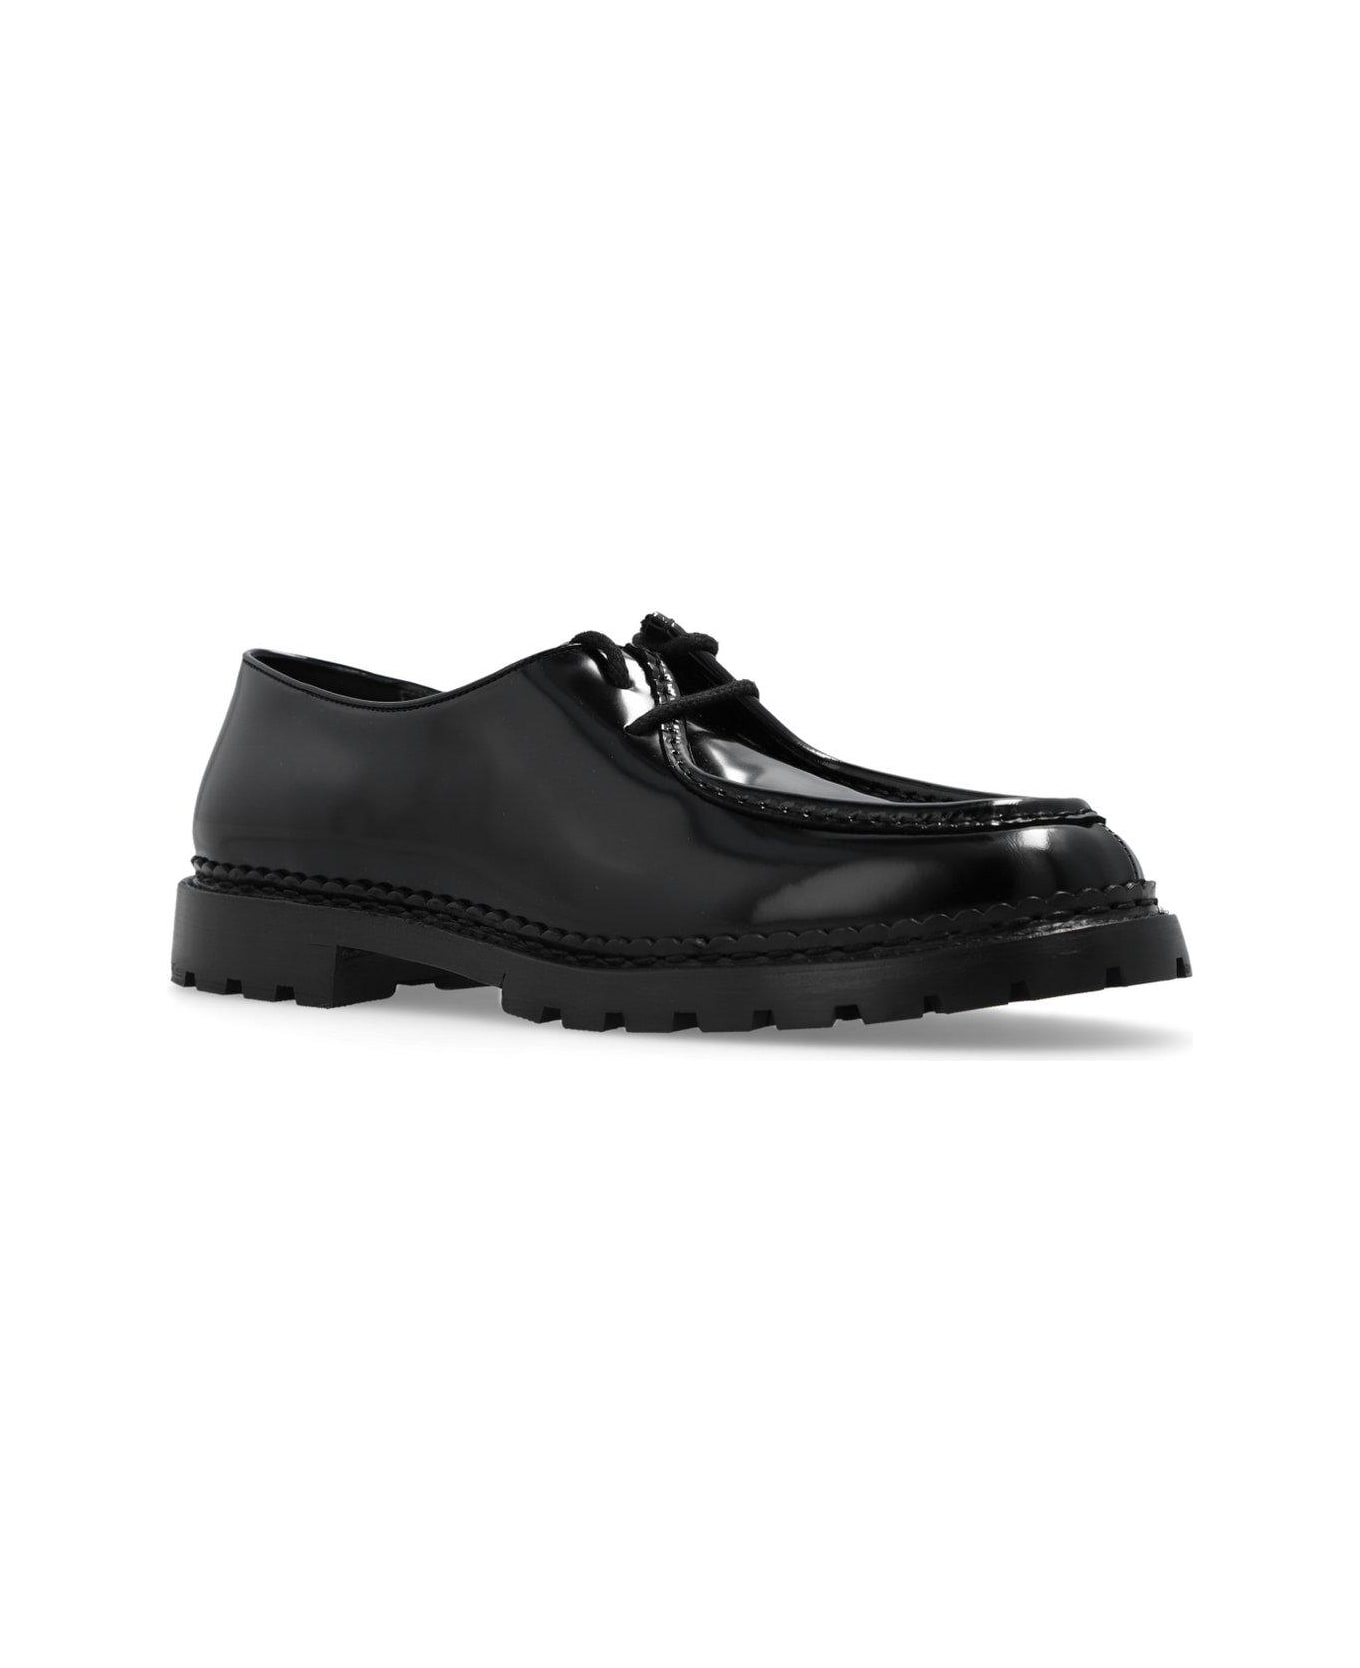 Saint Laurent Malo Slip-on Lace-up Shoes - Black